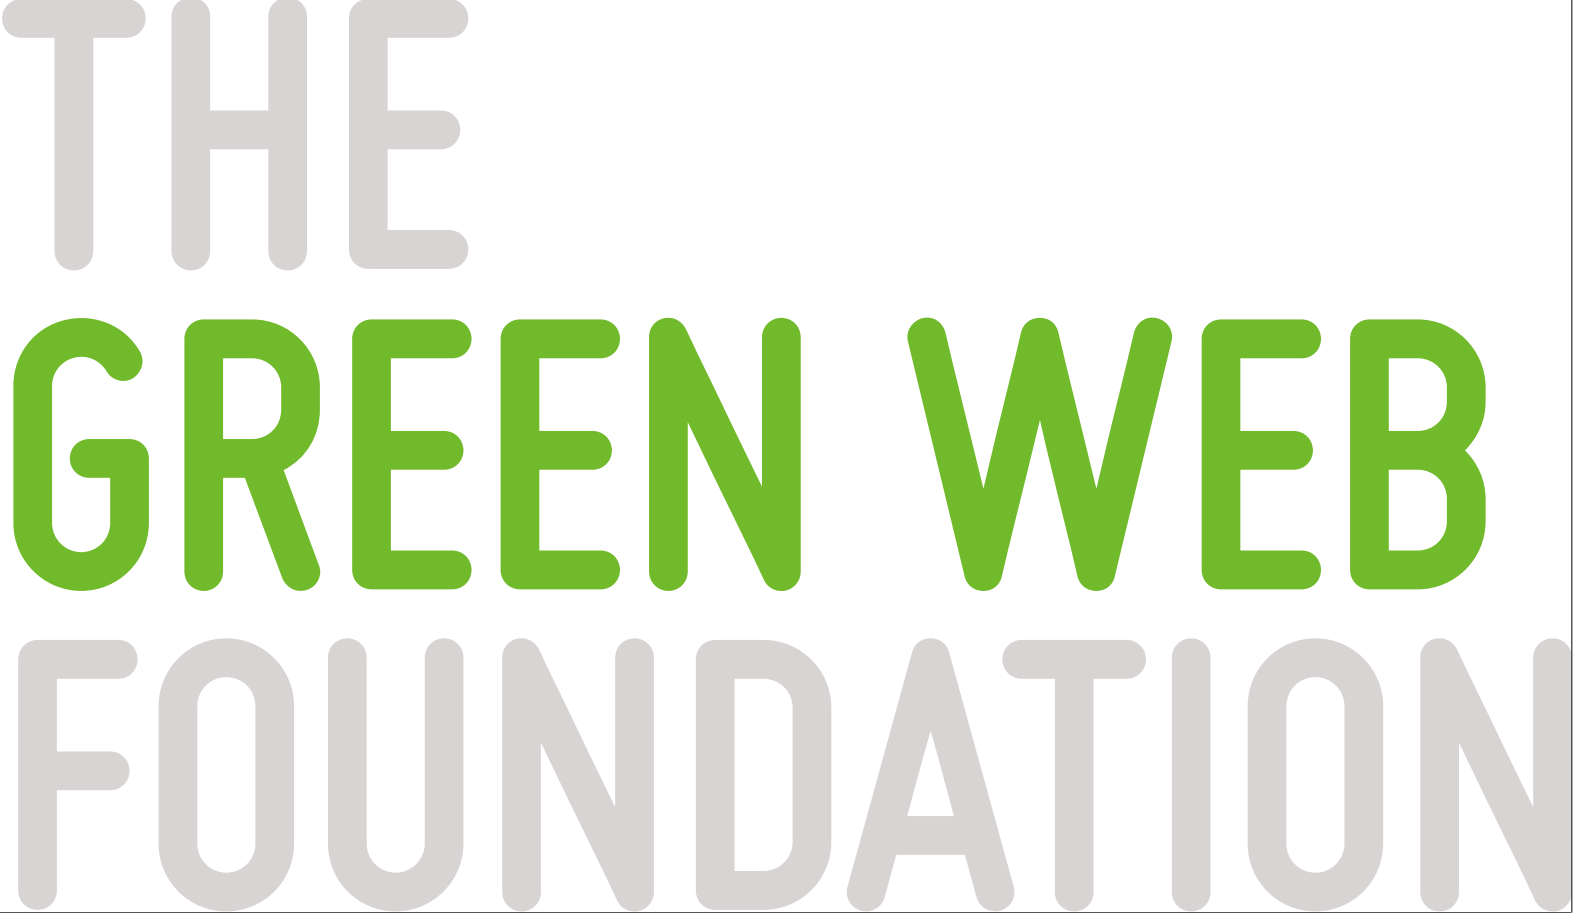 Devshop.it certificato come sito Green dalla Green Web Foundation per la sostenibilità ambientale digitale